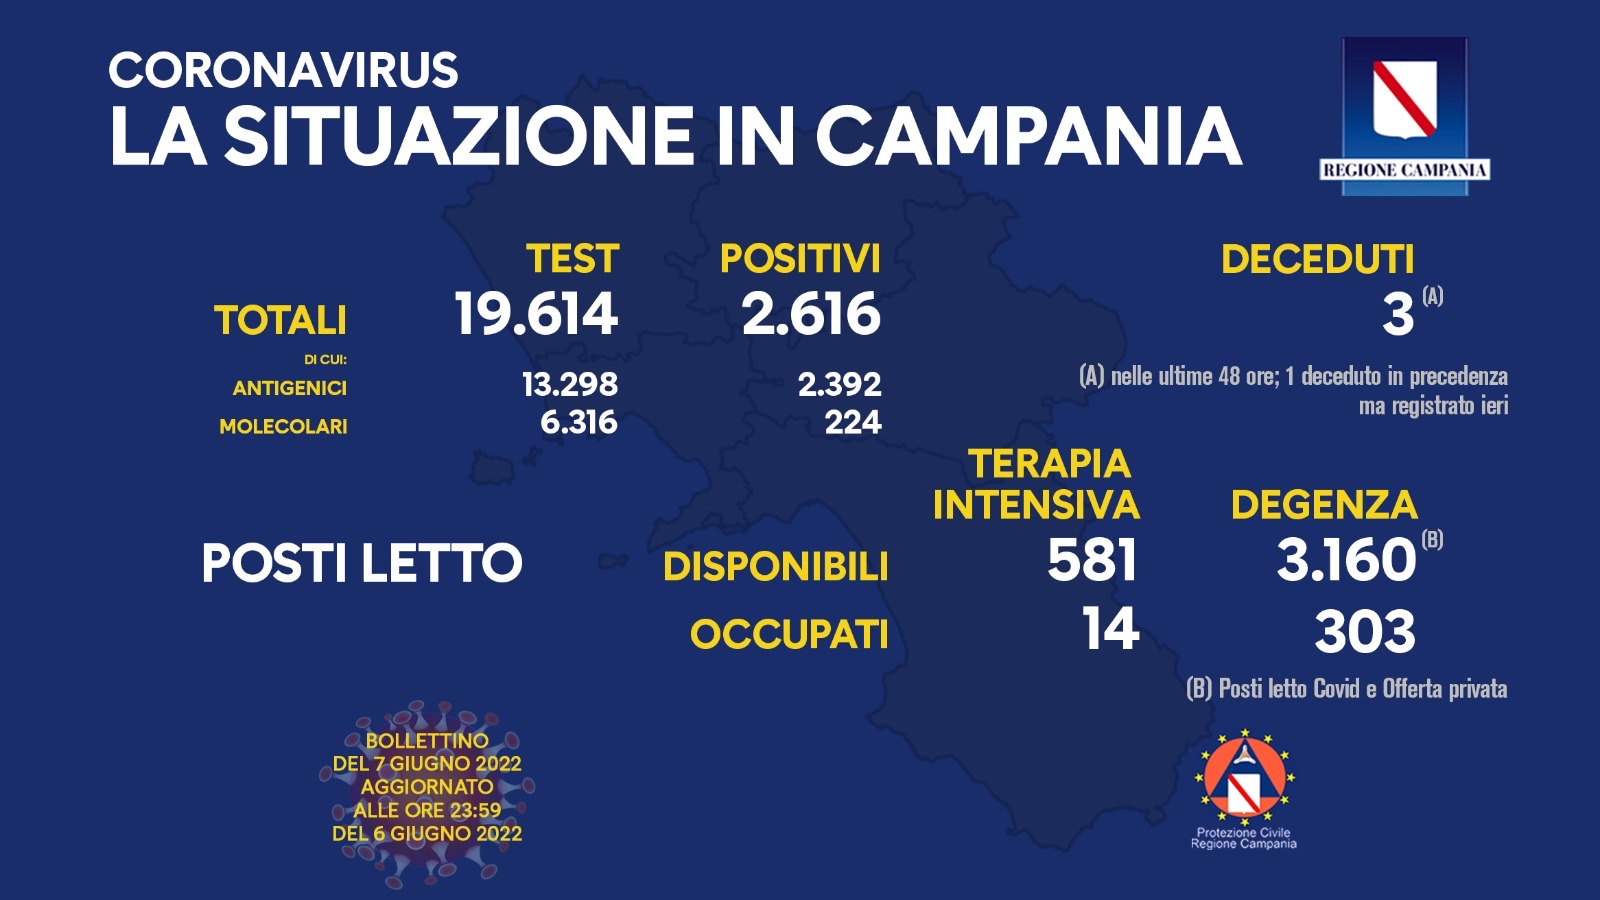 Covid 19 in Campania, bollettino 6 giugno: 2.616 positivi